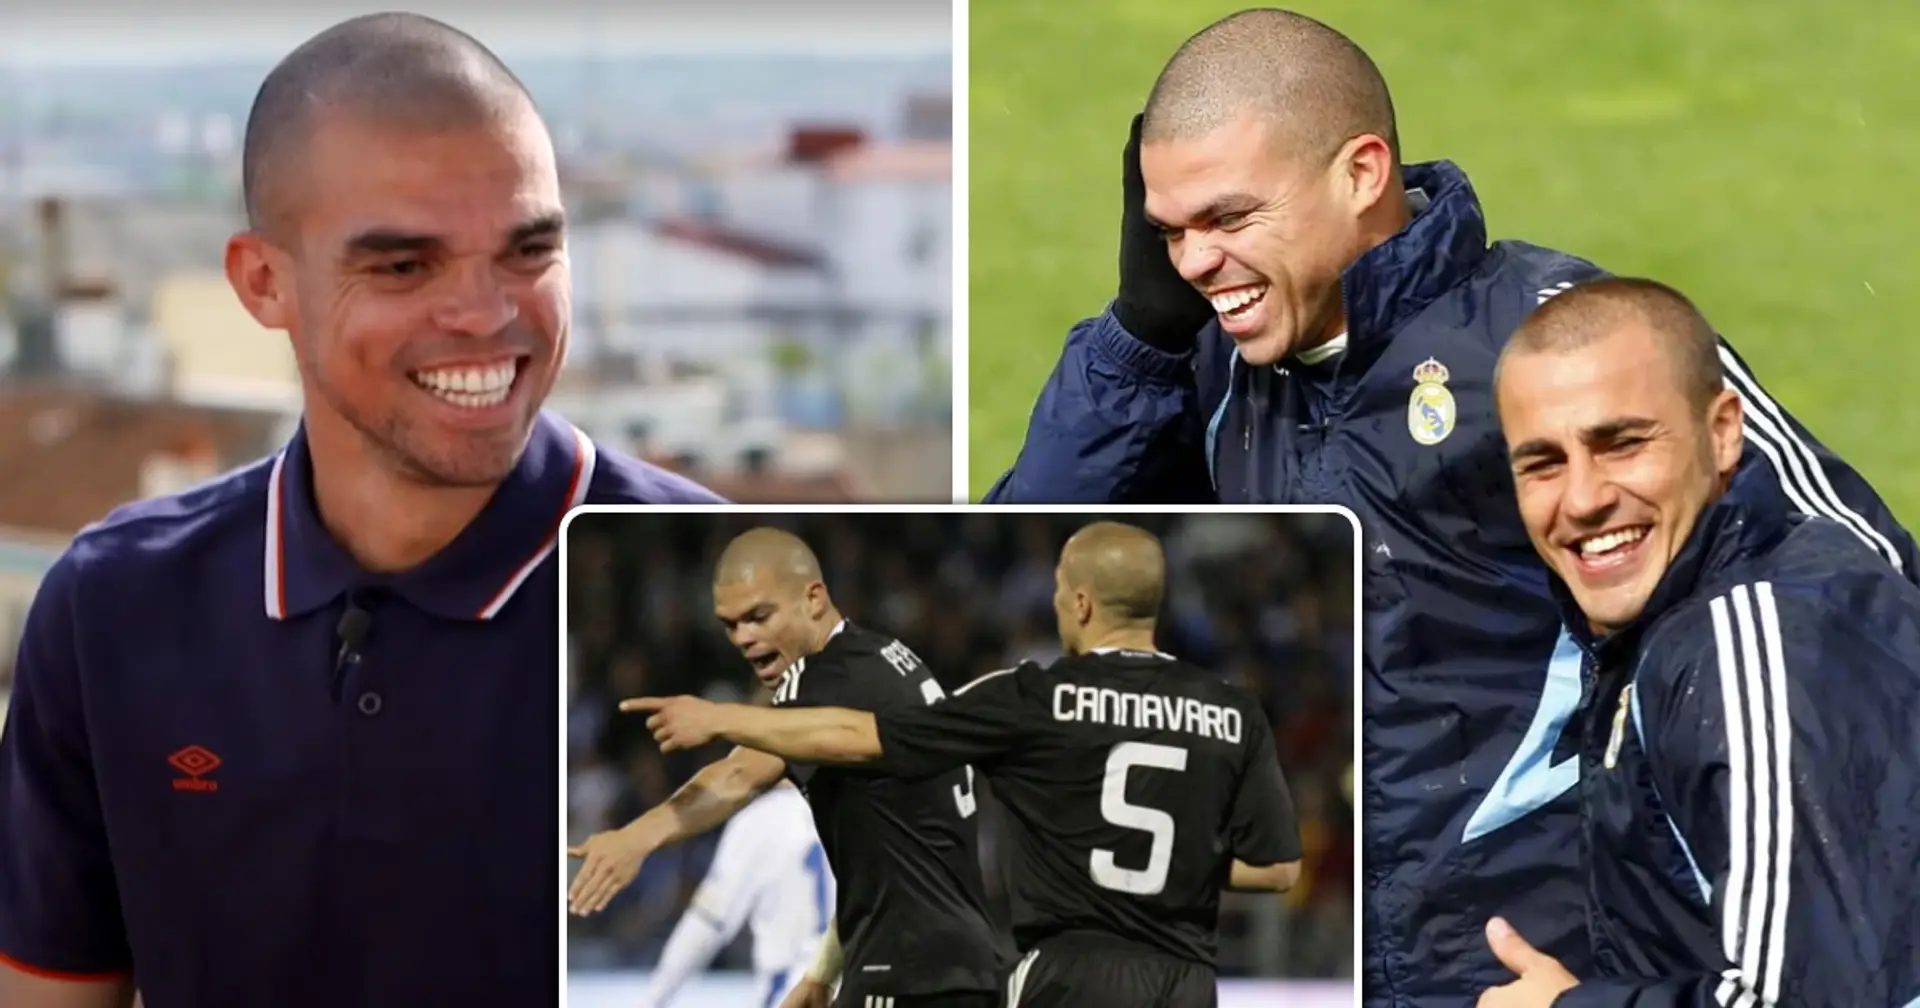 "Nein, nein, das machen wir hier nicht": Pepe über sein erstes Spiel als Spieler von Real Madrid